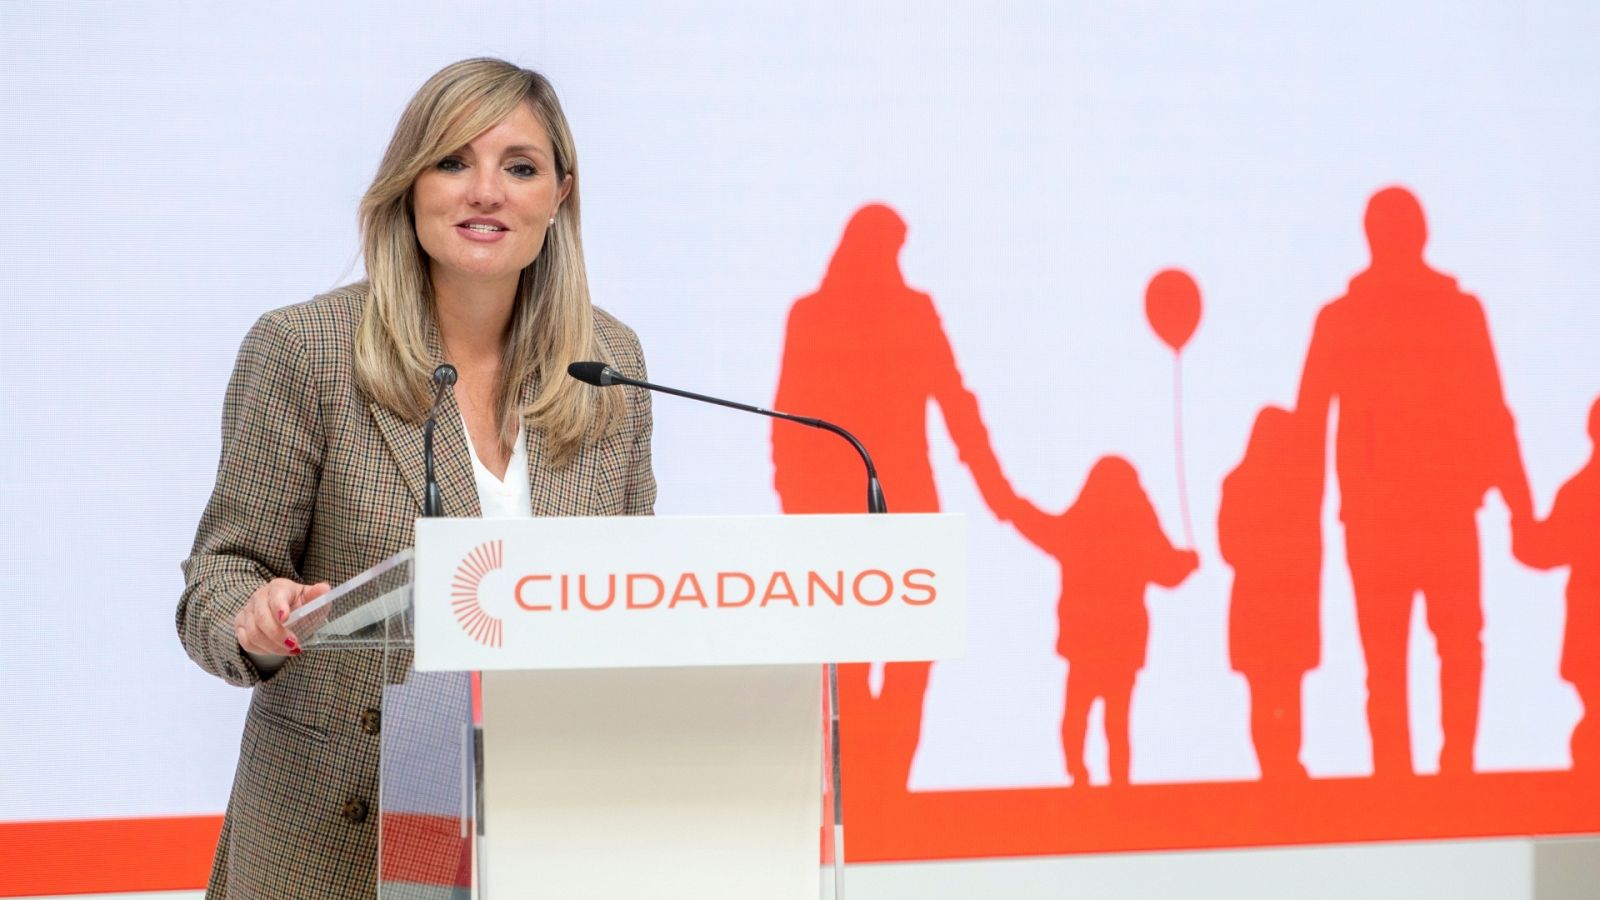 Patricia Guasp deja la dirección de Ciudadanos y abandona la política